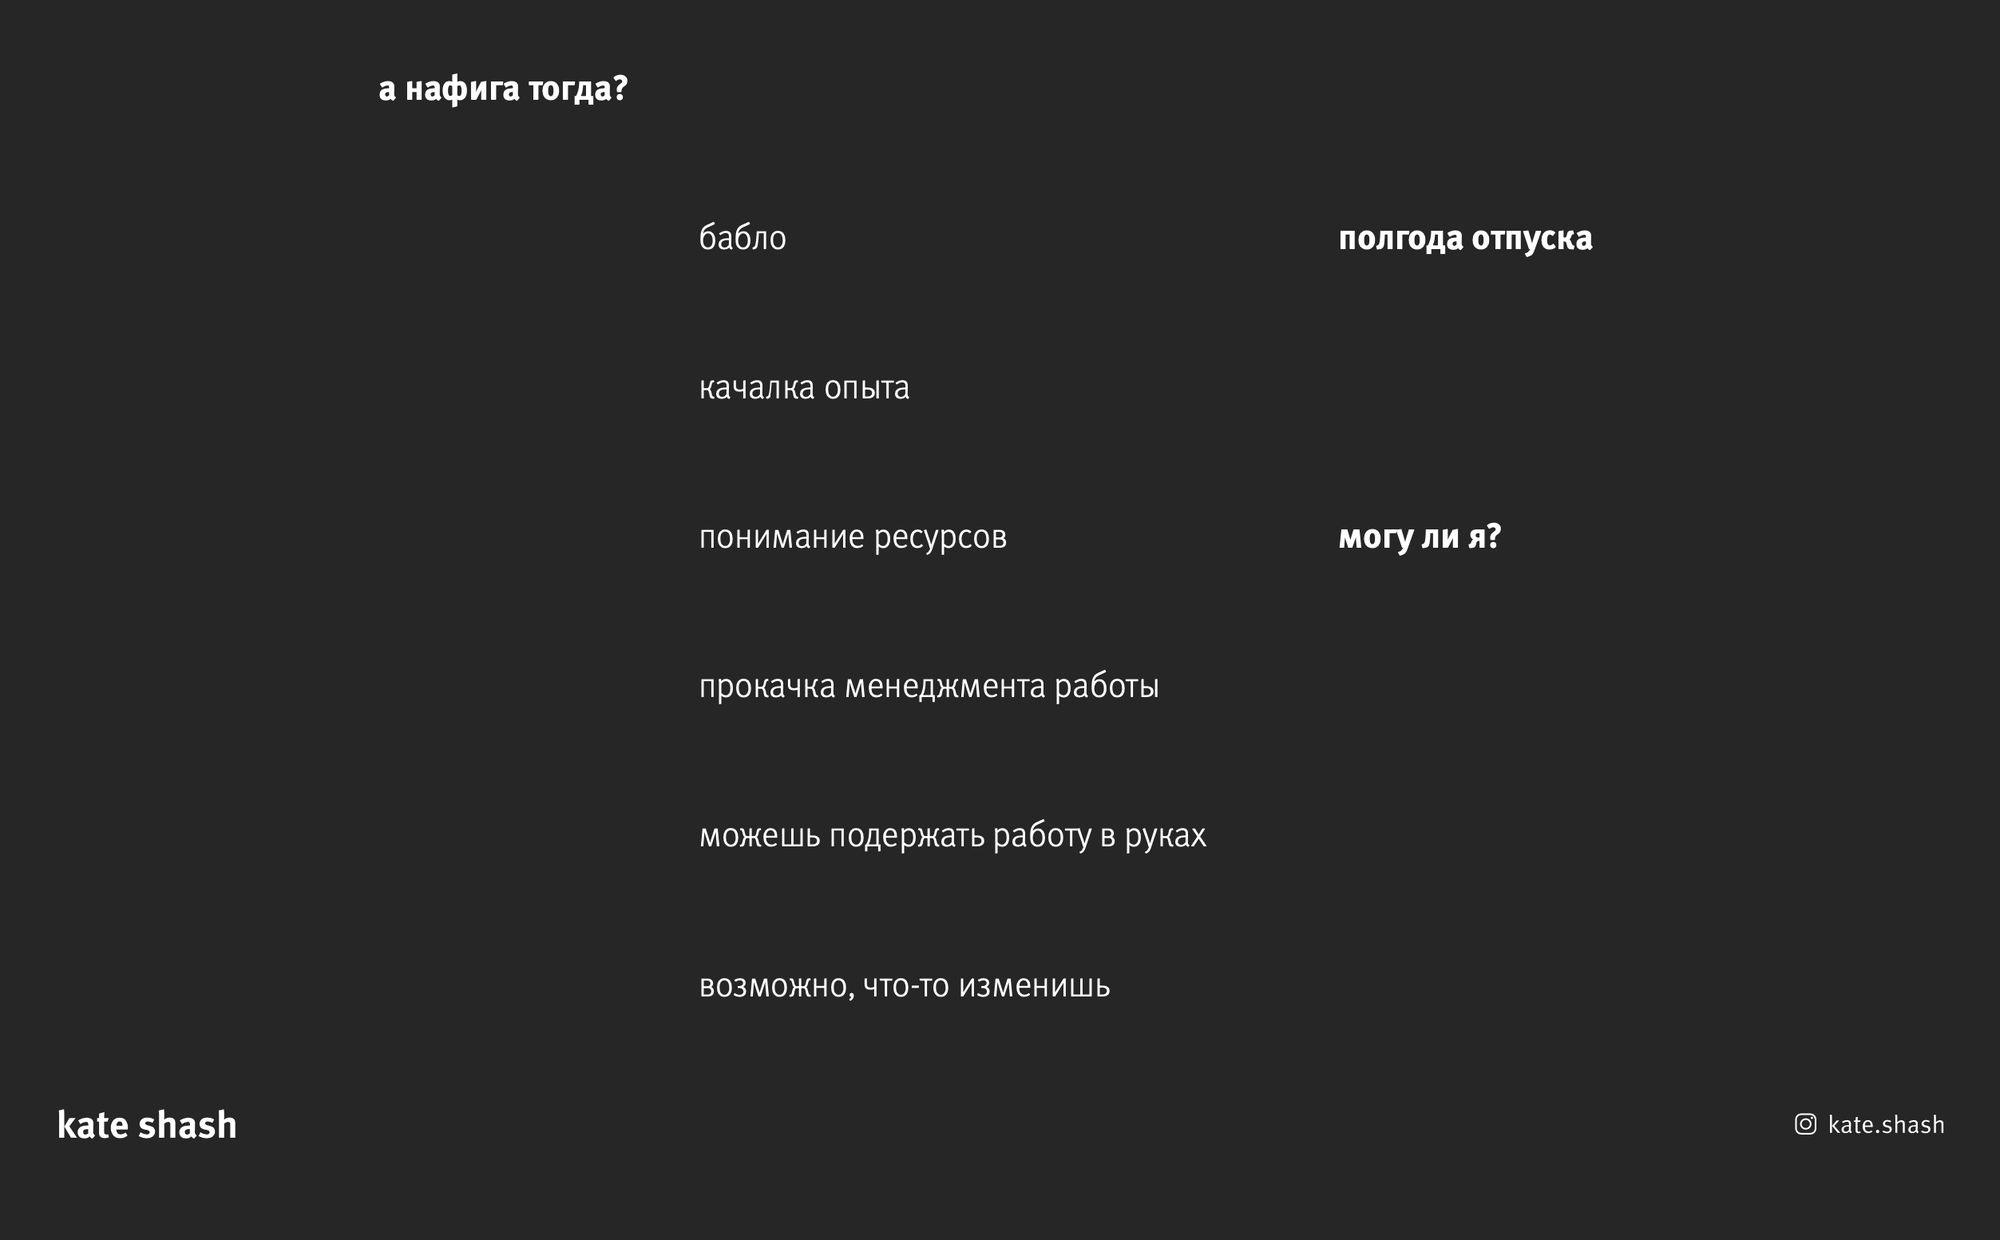 Пример слайда с лекции в Нижнем Новгороде для студии UNBLVBL